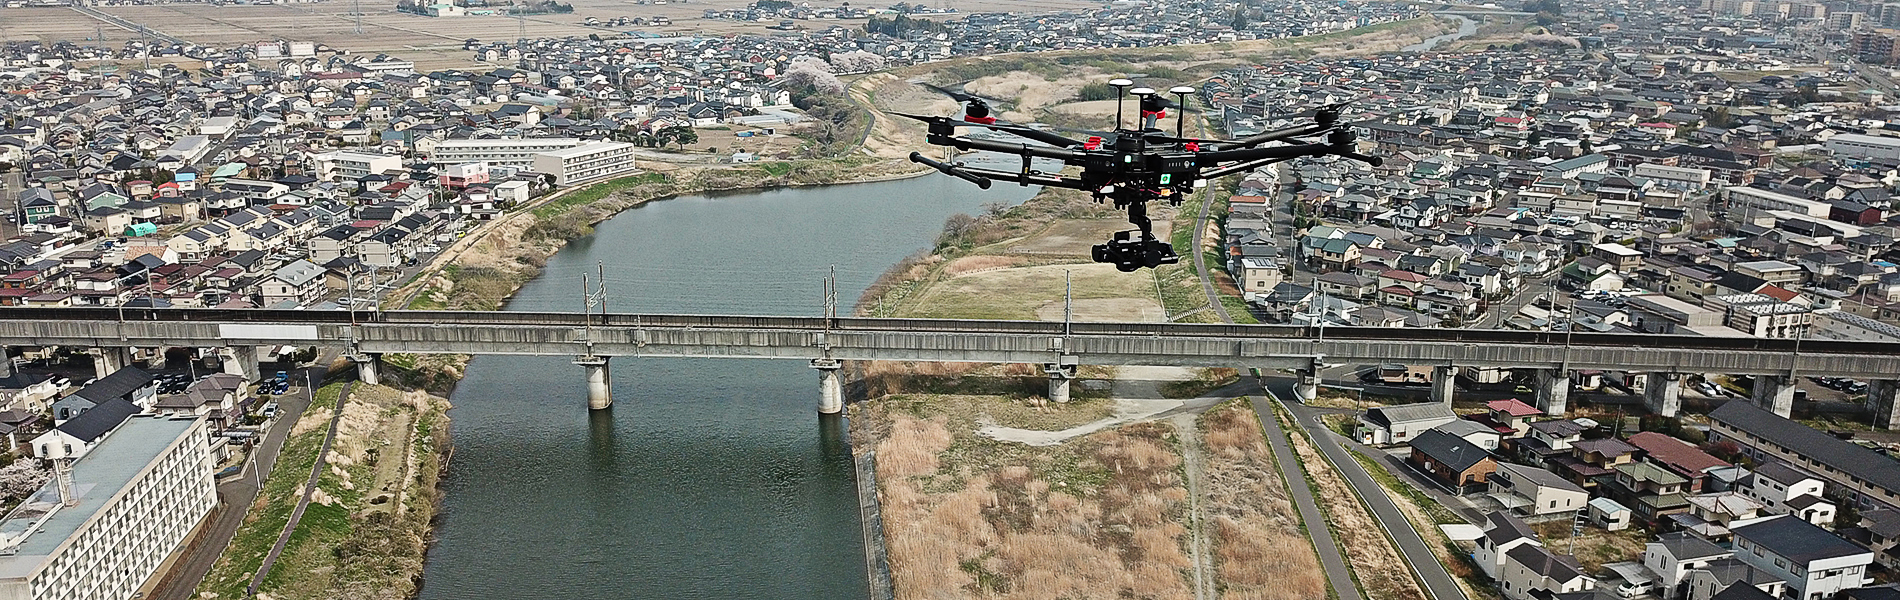 ドローン（UAV）による空撮